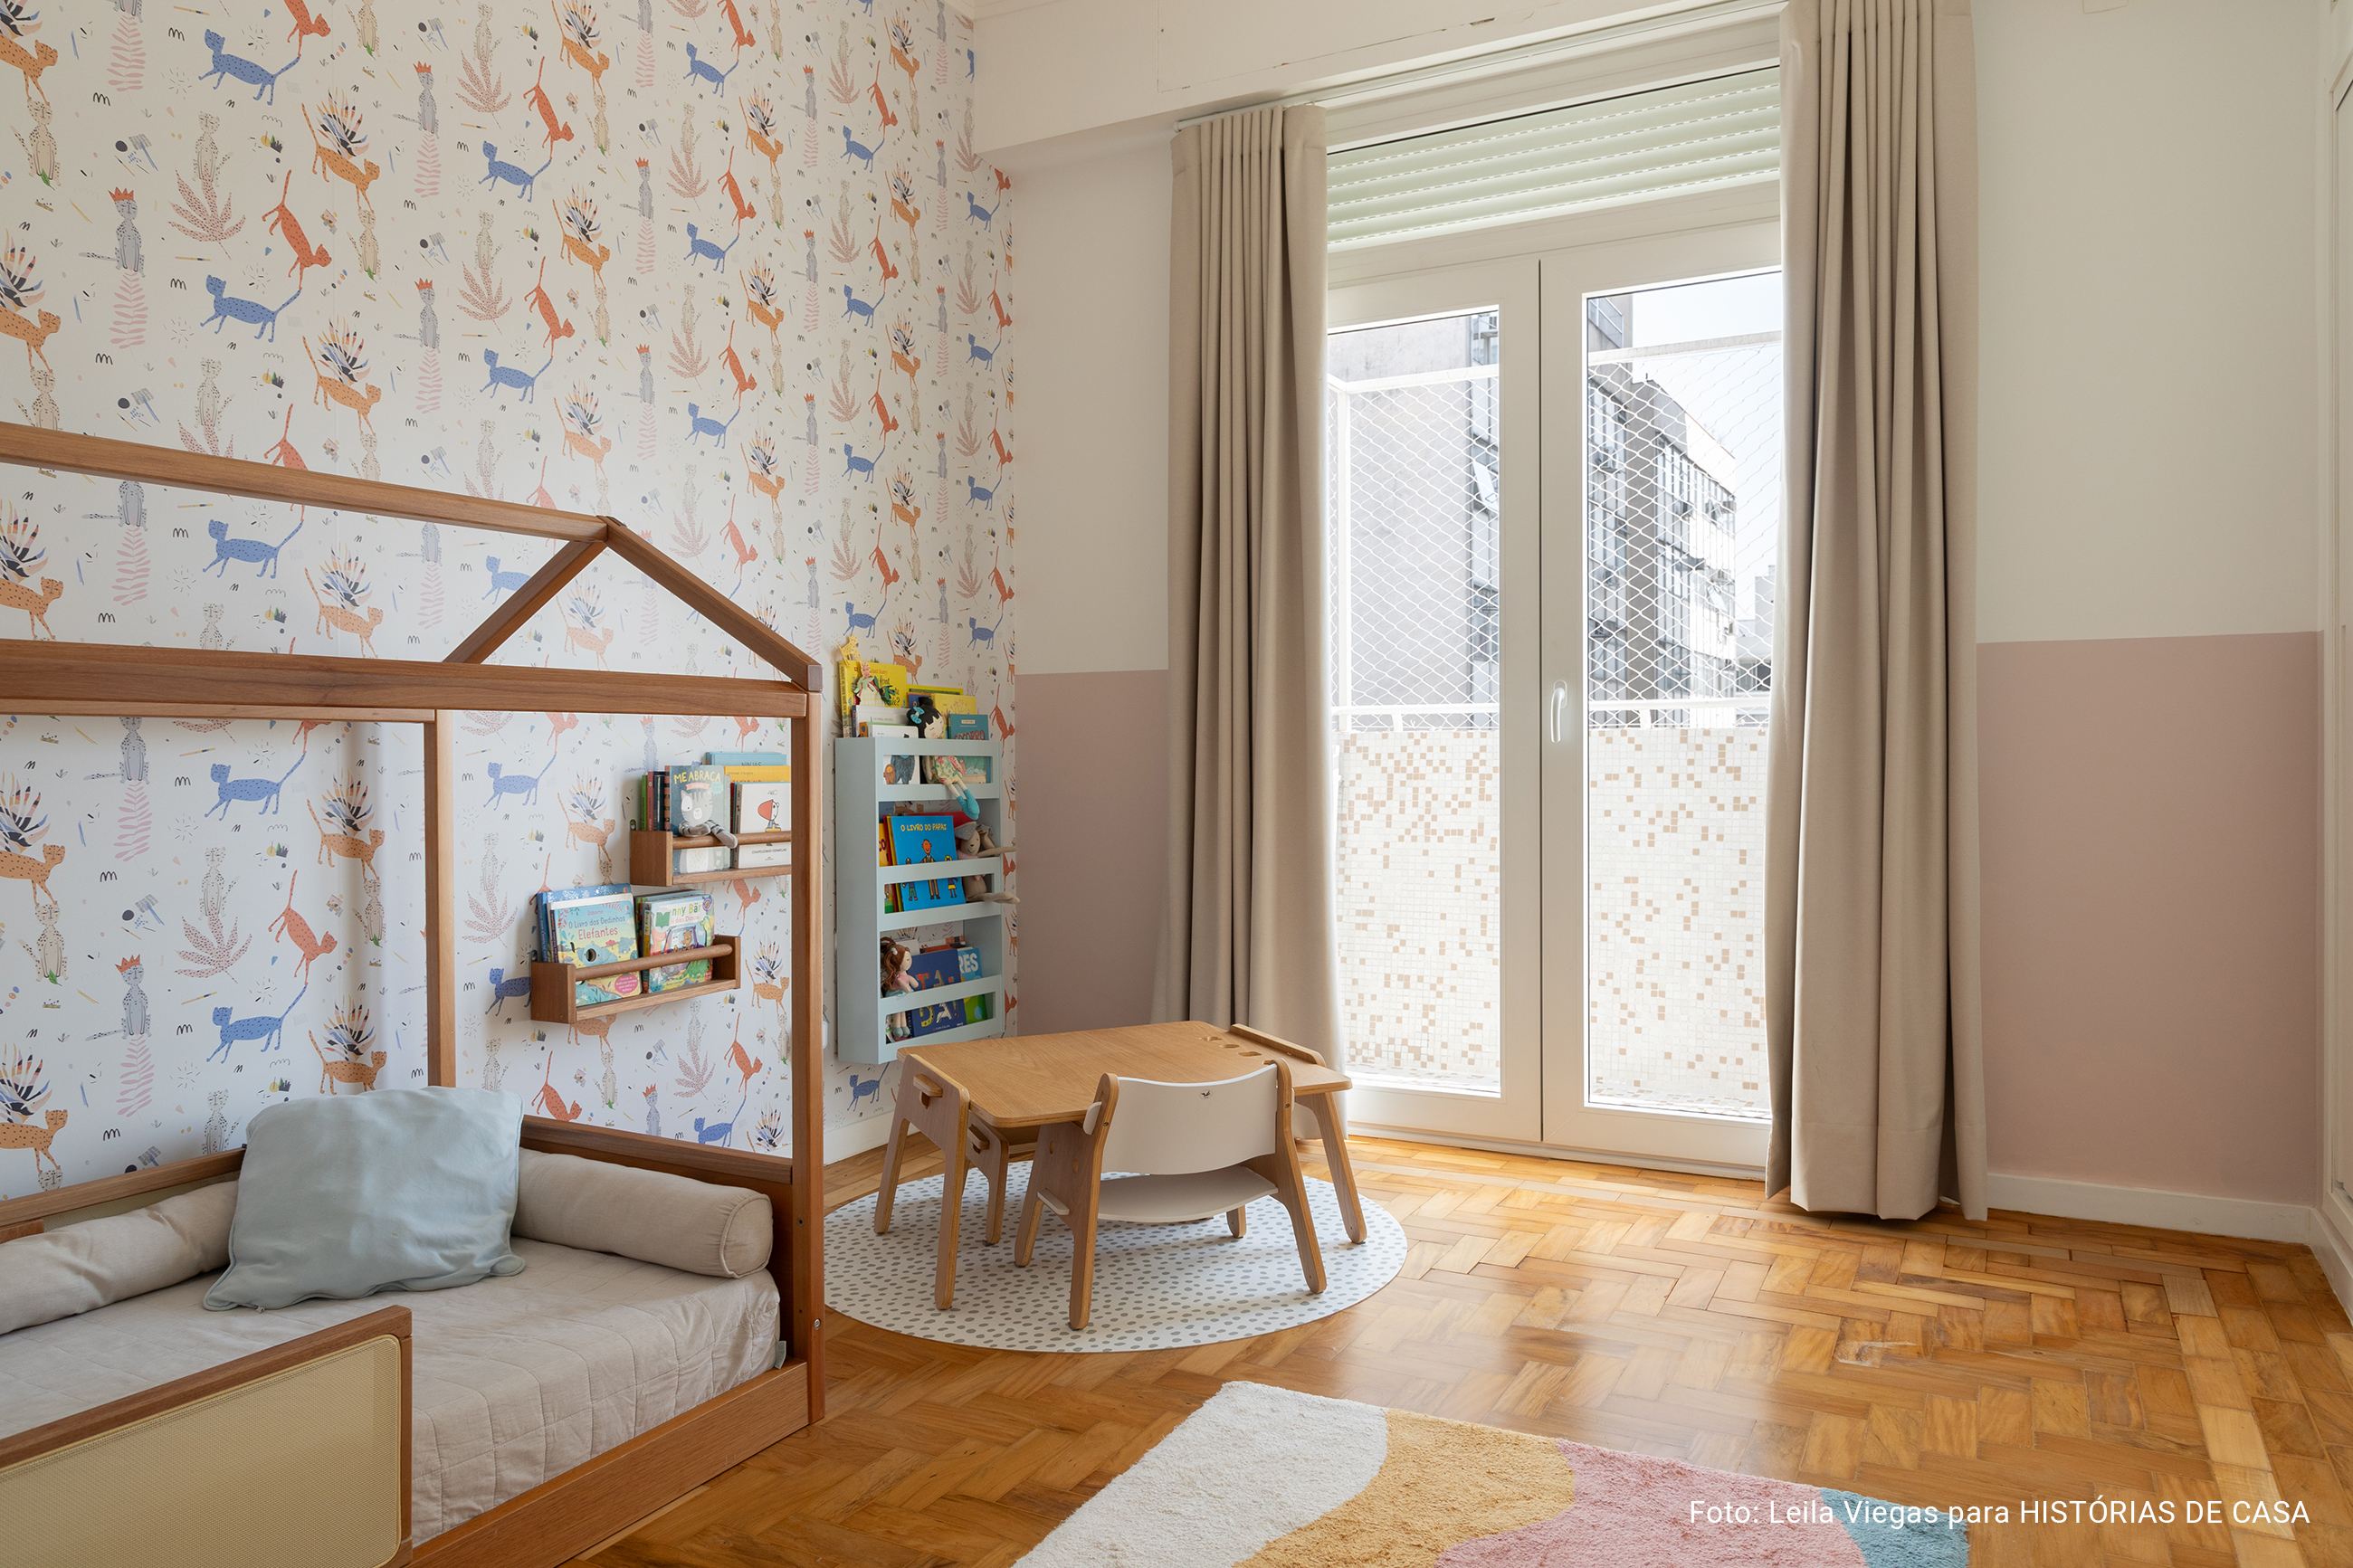 Apartamento colorido com piso azul na cozinha, espaços integrados e quarto de criança.